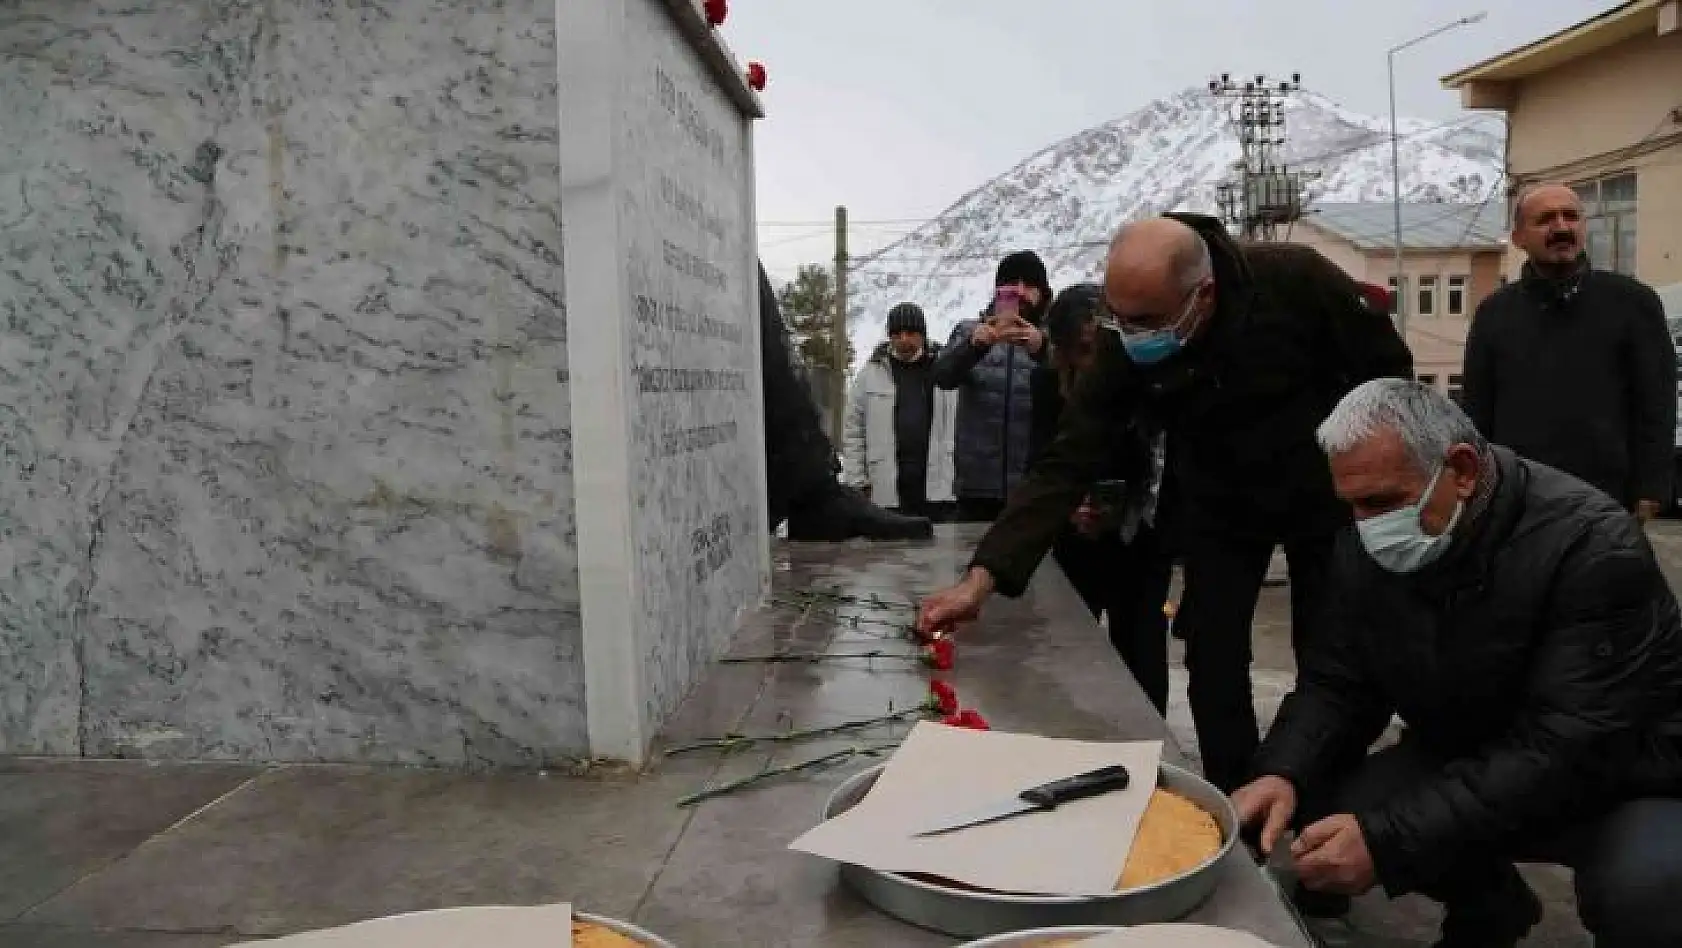 Ünlü şair Cemal Süreya ölüm yıldönümünde memleketi Tunceli'de anıldı